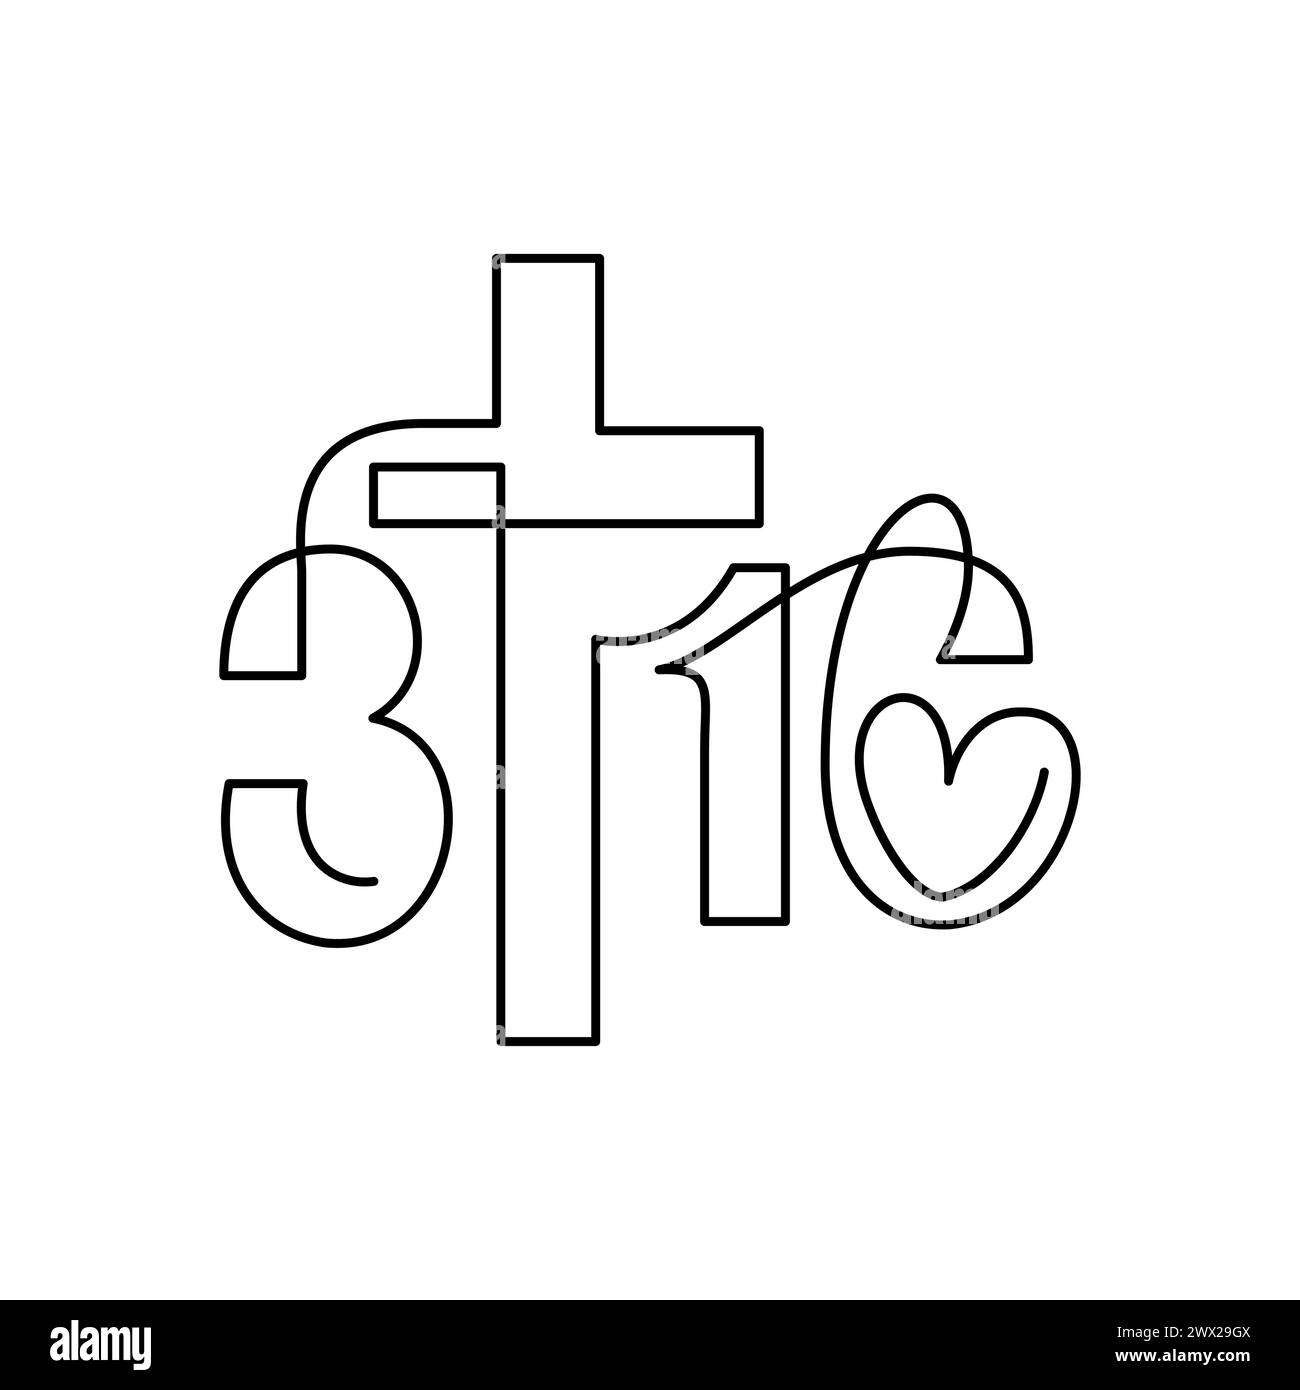 Expression biblique de la forme Jean 3:16. En continu, une ligne d'art logo croix icône sur l'amour de Dieu. Histoire vraie, typographie pour imprimer ou utiliser comme affiche, carte Illustration de Vecteur